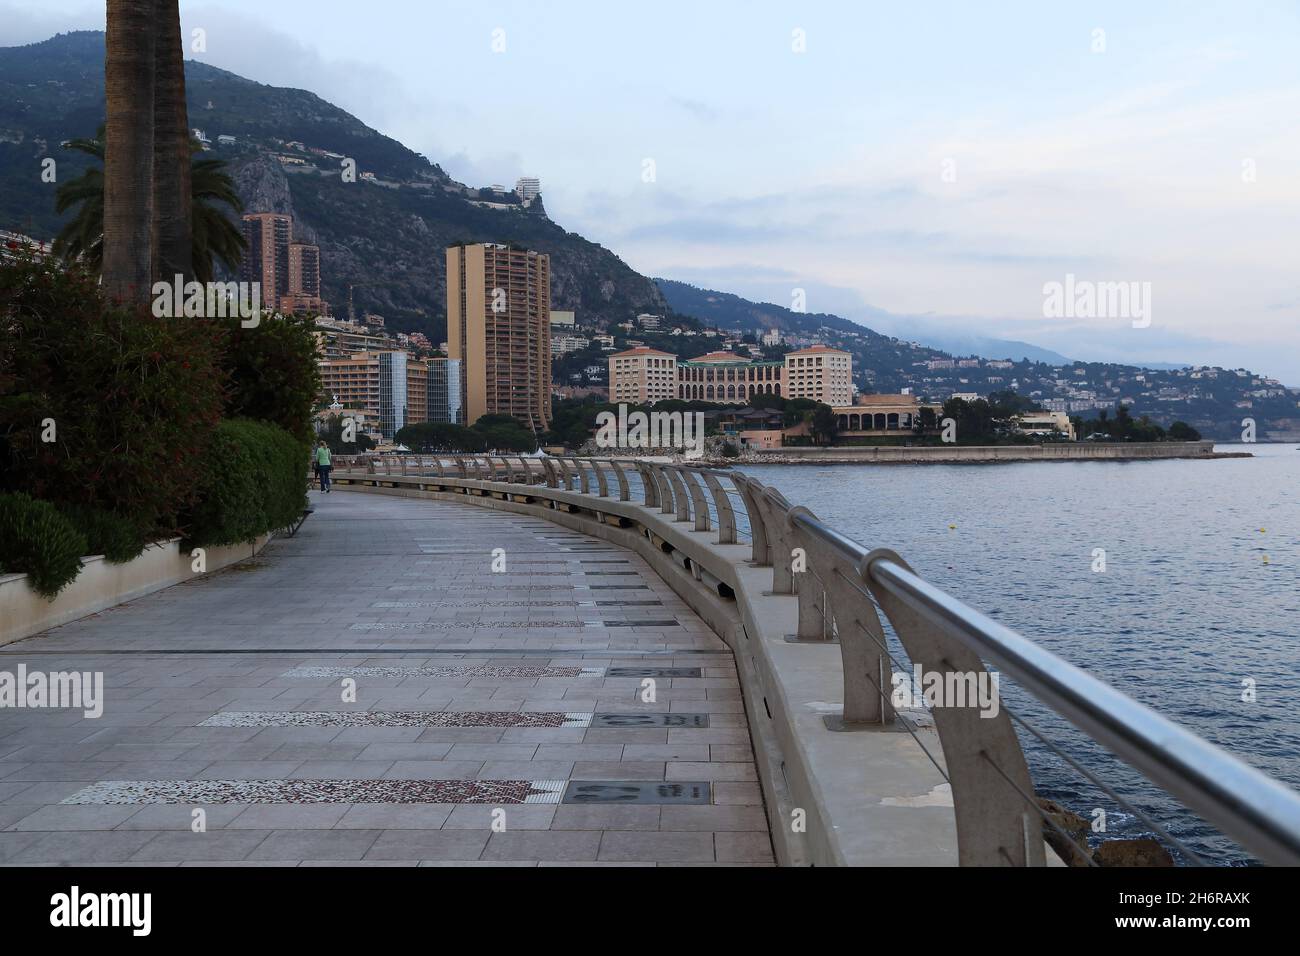 Questo è il molo di Monte Carlo che ha costruito la Walk of Fame famosi giocatori con impronte di piedi e autografi 19 maggio 2015 a Monaco, Monaco. Foto Stock